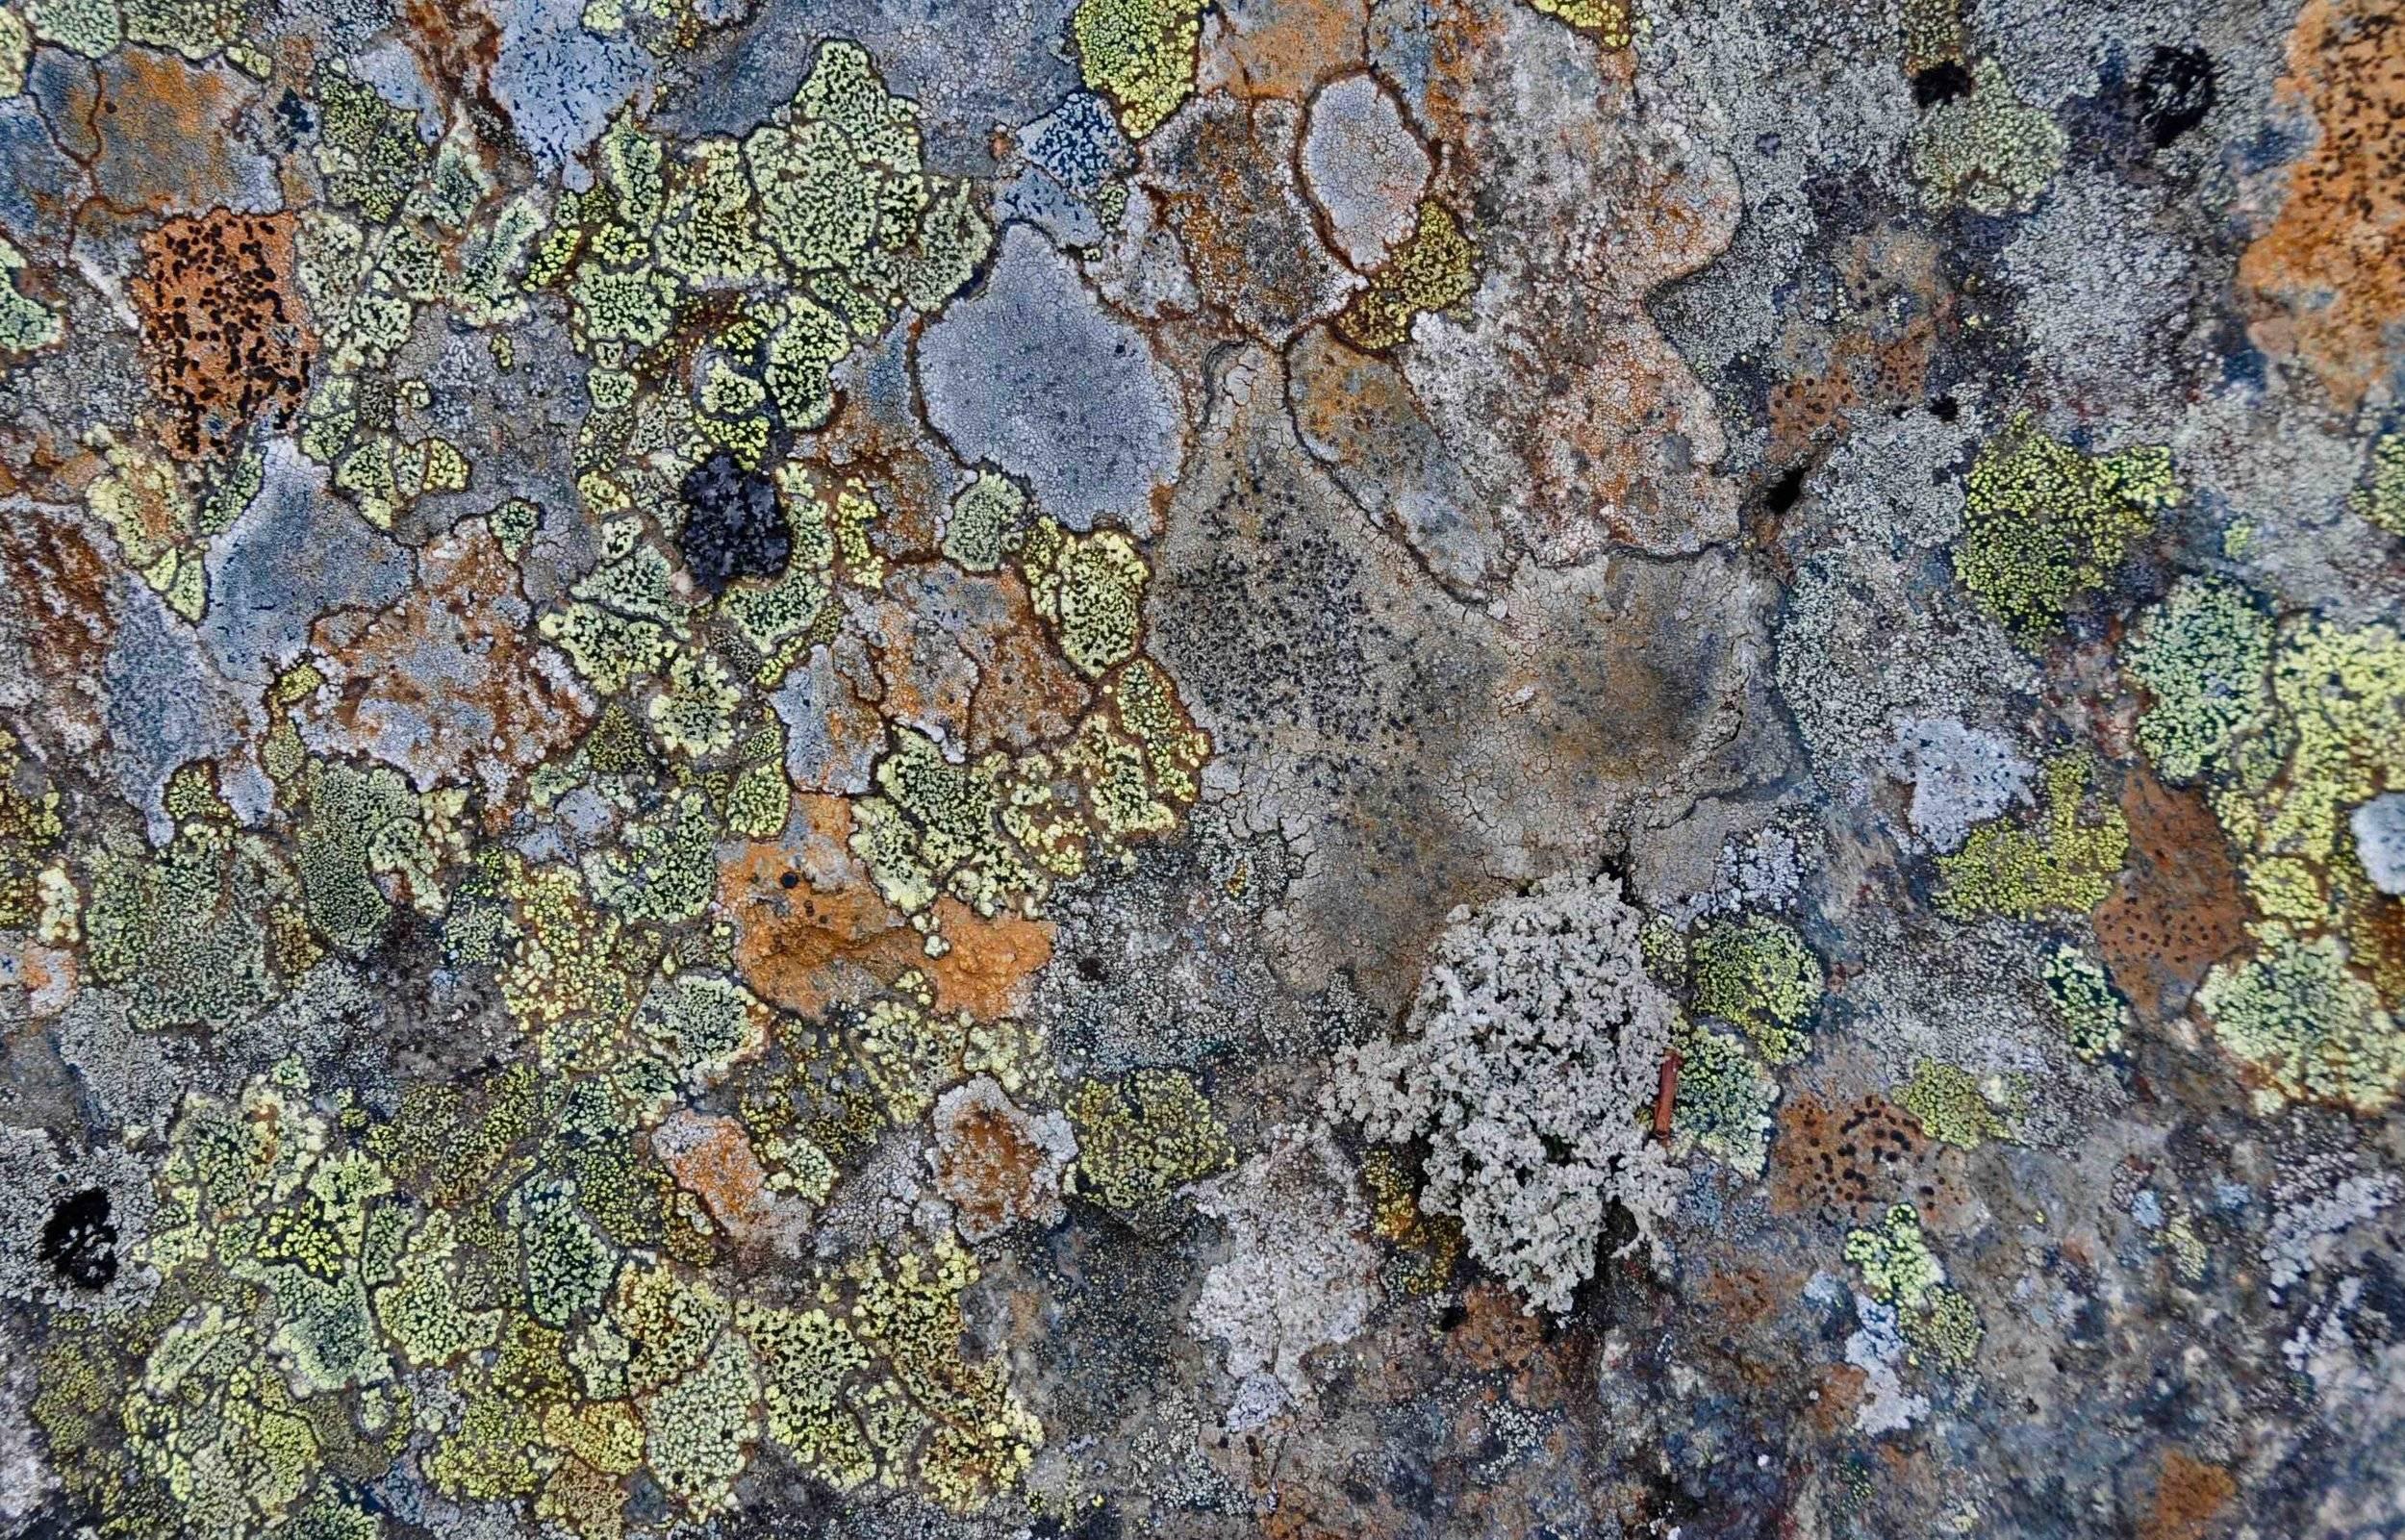 Frontières. Il y a un lichen foliacé (de feuille) gris parmi les crustacés.